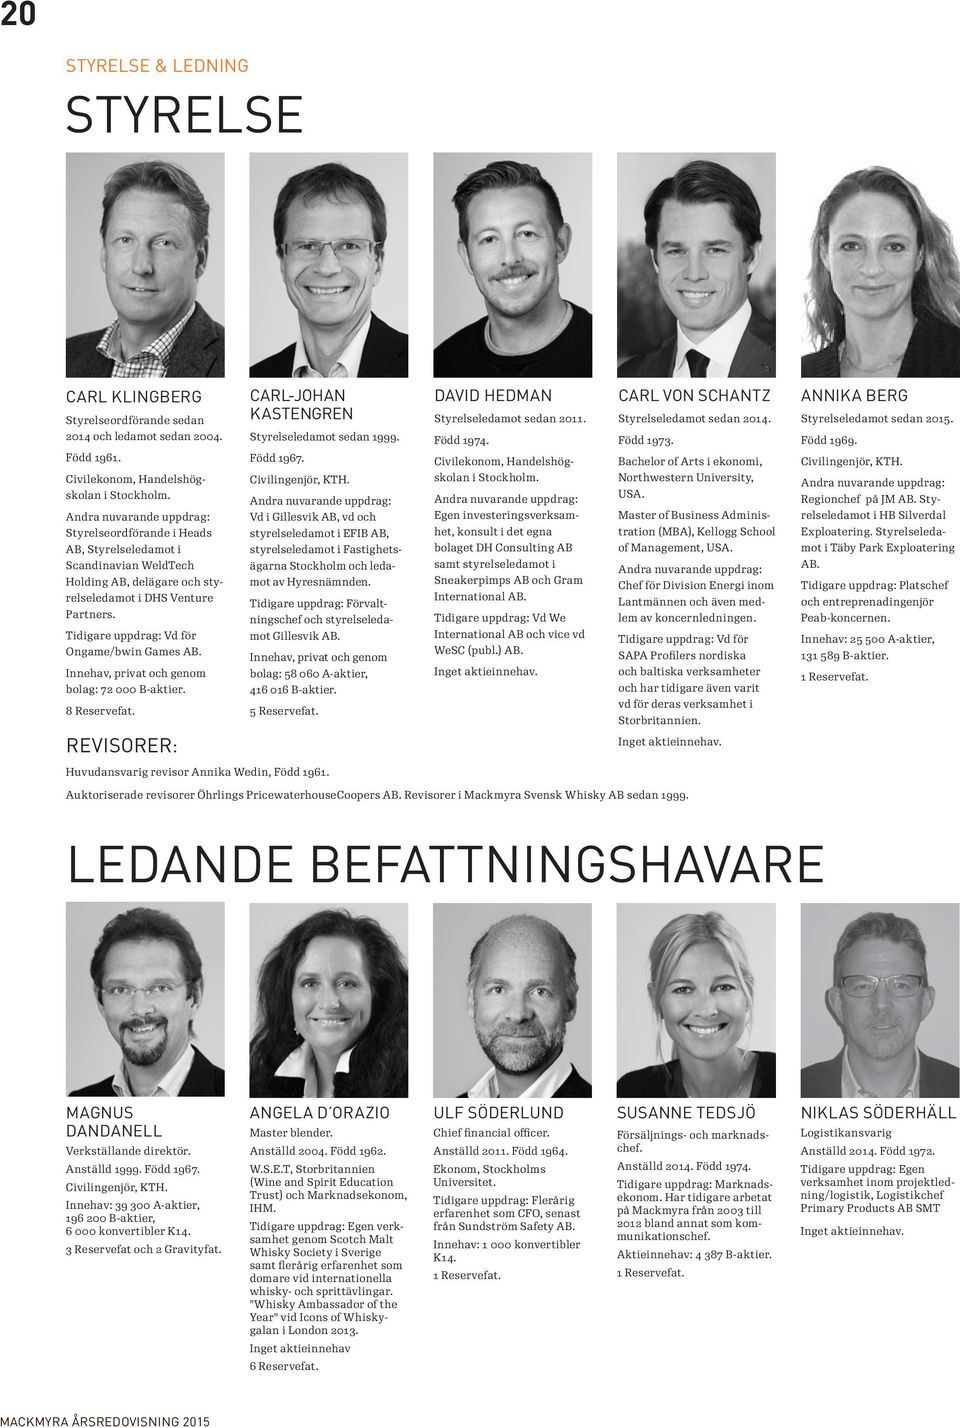 Andra nuvarande uppdrag: Styrelseordförande i Heads AB, Styrelseledamot i Scandinavian WeldTech Holding AB, delägare och styrelseledamot i DHS Venture Partners.